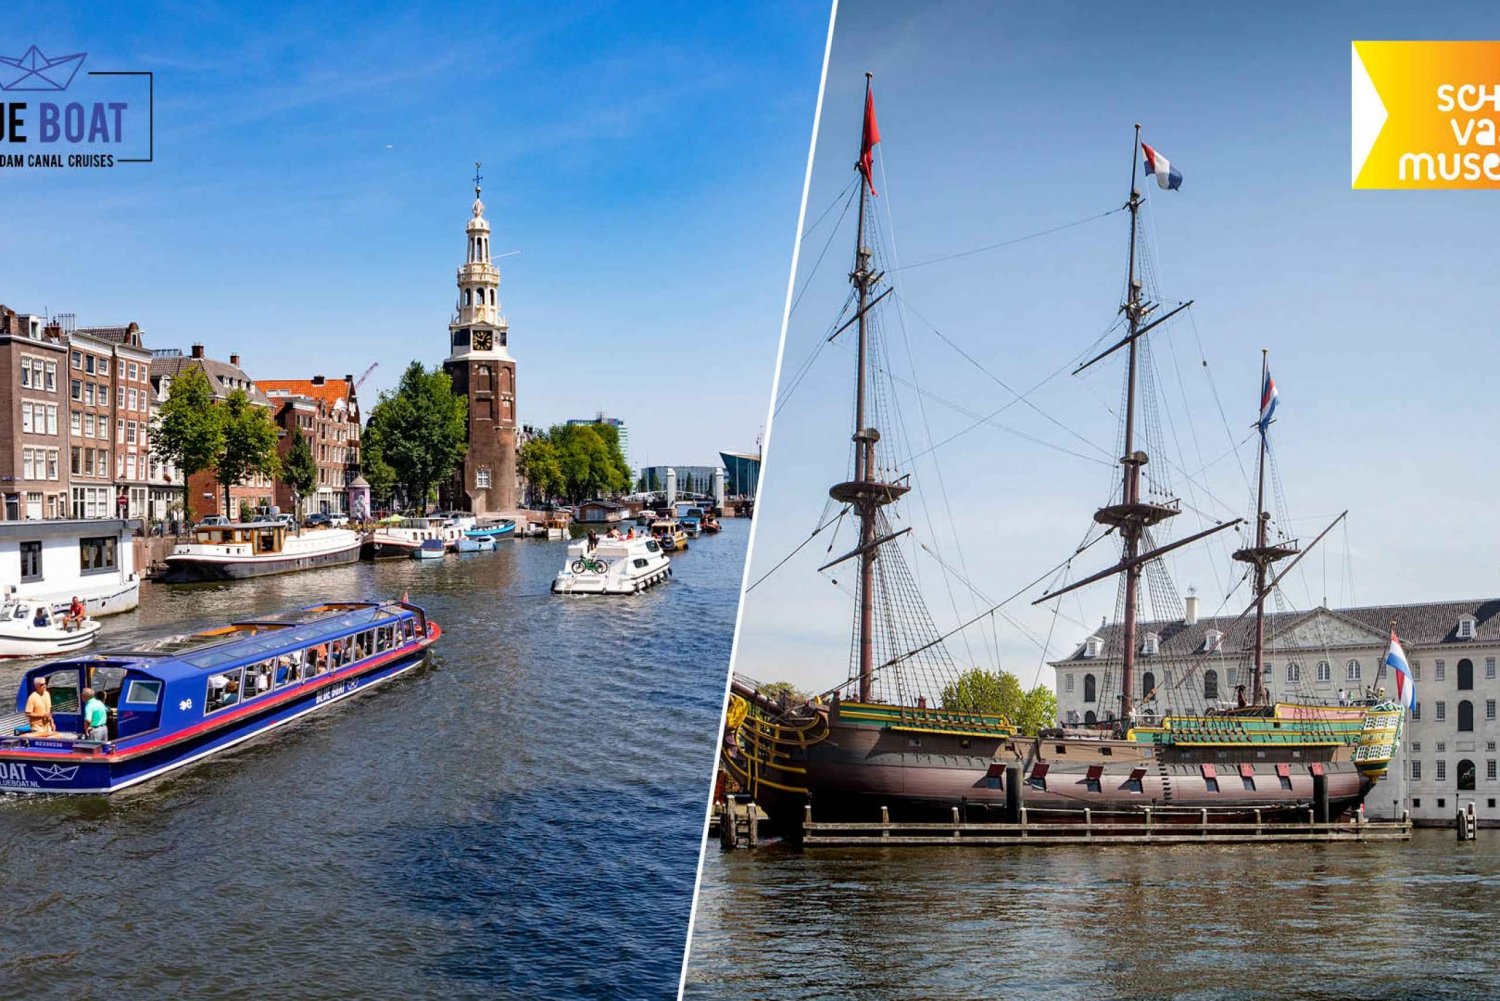 Biglietto combinato per la crociera sui canali di Amsterdam e il museo marittimo